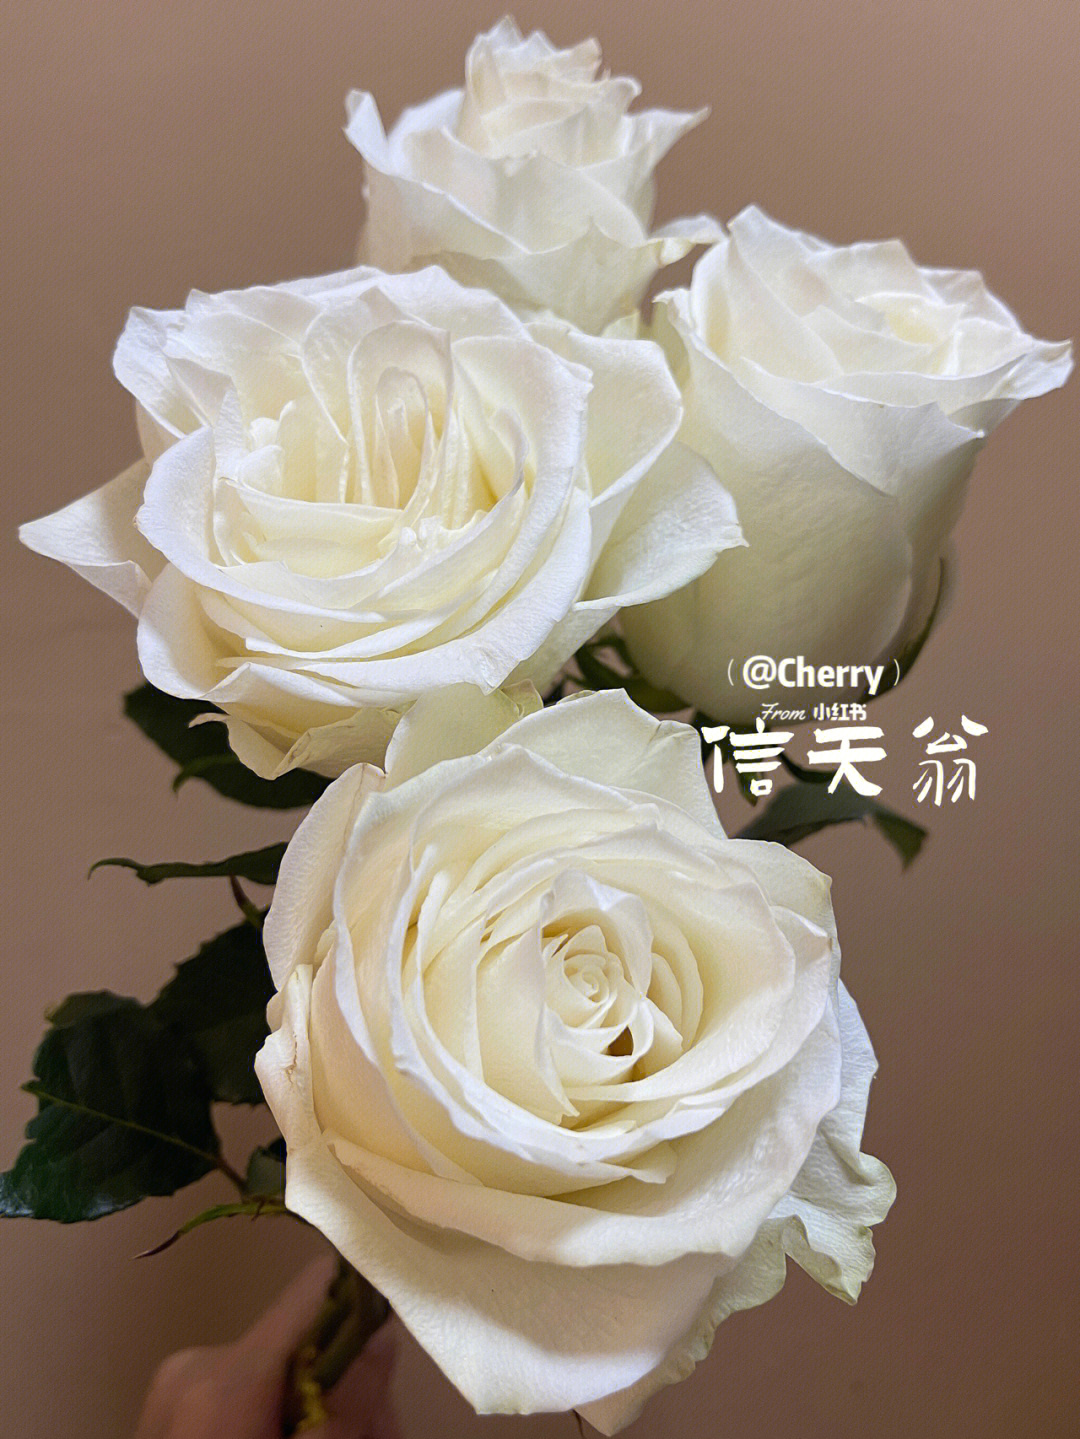 信天翁玫瑰花语图片